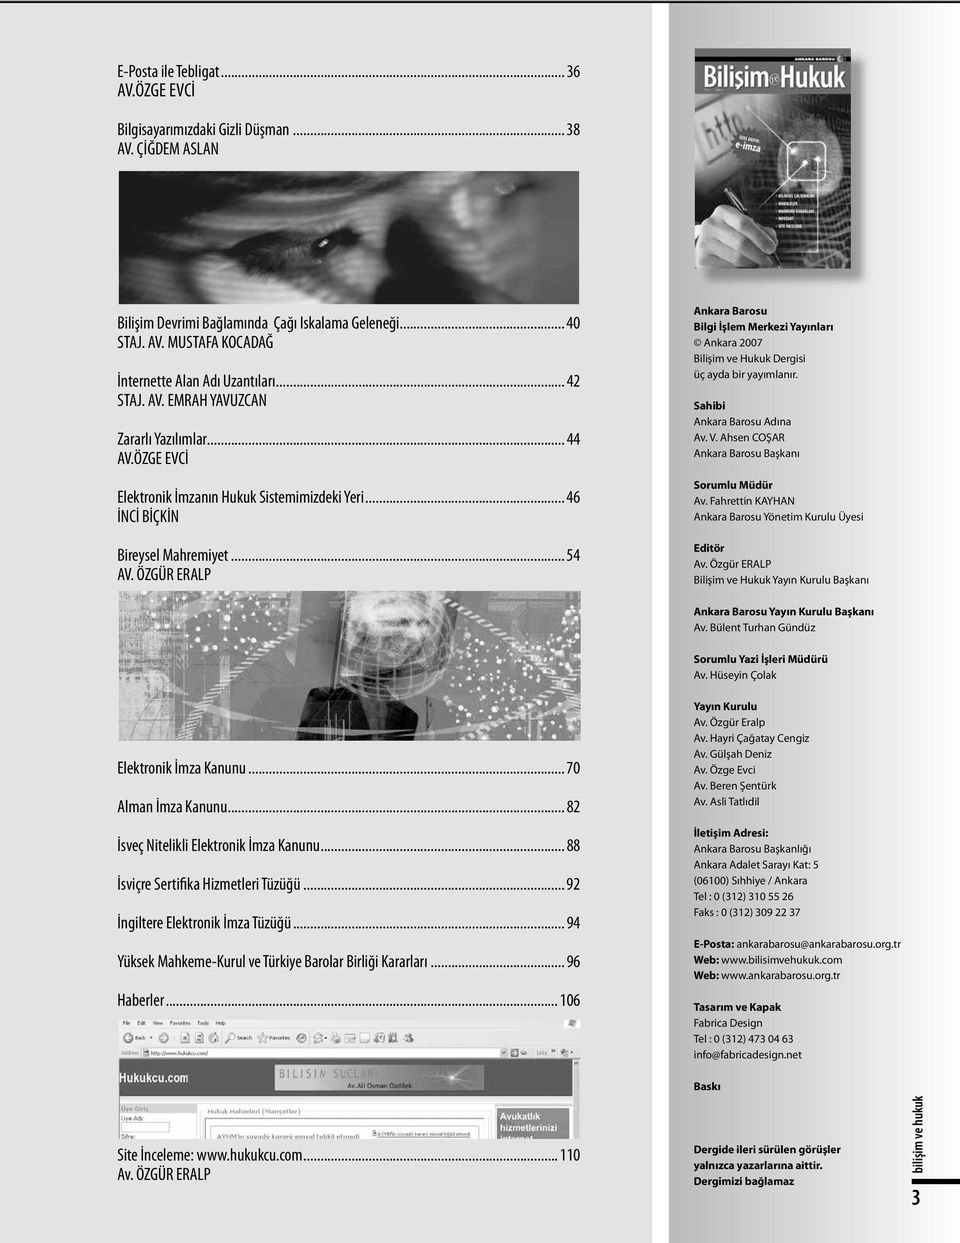 ÖZGÜR ERALP Ankara Barosu Bilgi İşlem Merkezi Yayınları Ankara 2007 Bilişim ve Hukuk Dergisi üç ayda bir yayımlanır. Sahibi Ankara Barosu Adına Av. V.